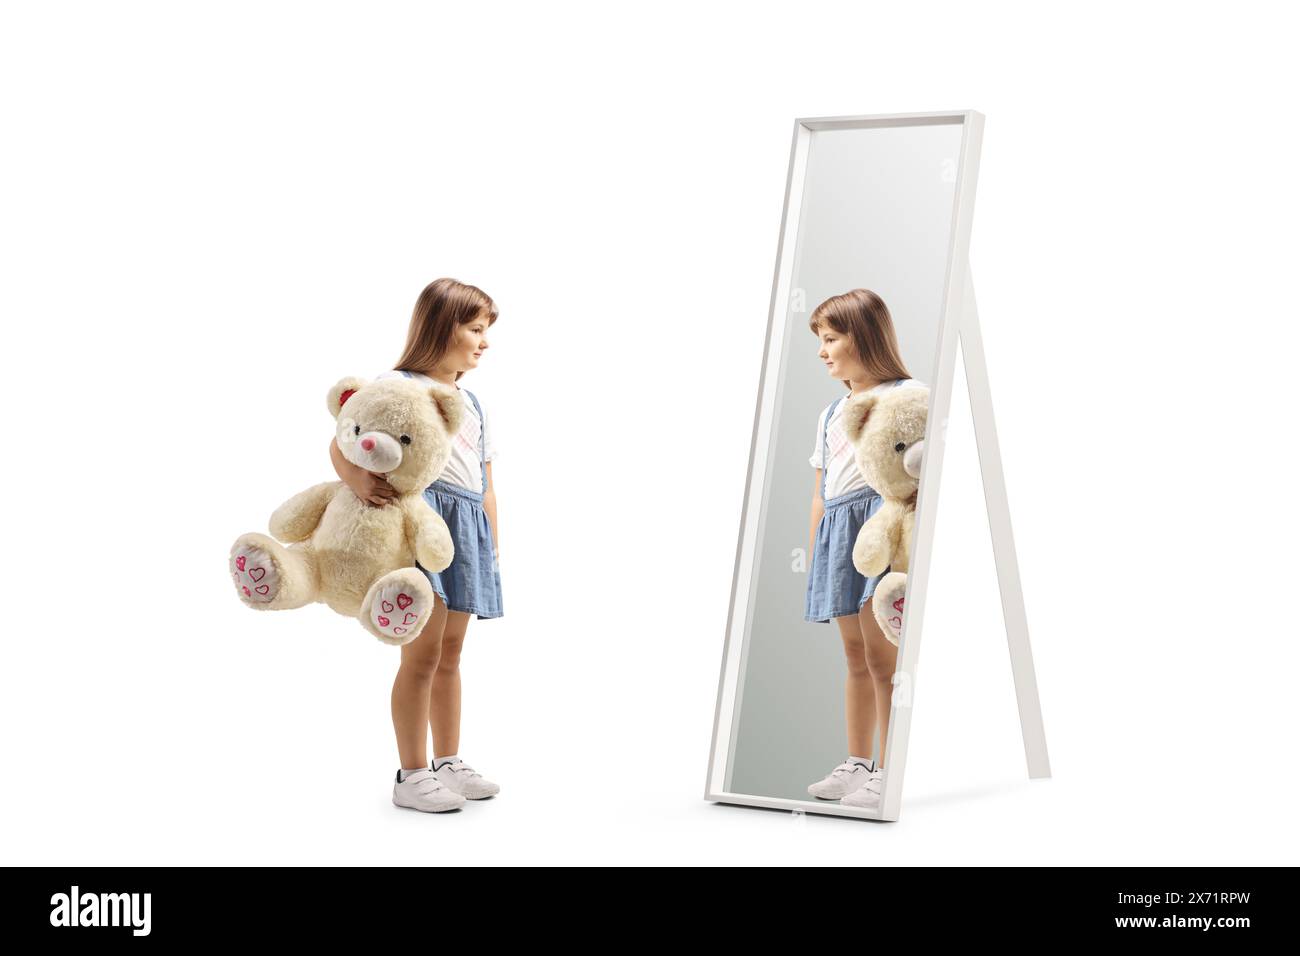 Ragazza che tiene in mano un grande orsacchiotto e guarda uno specchio isolato su sfondo bianco Foto Stock